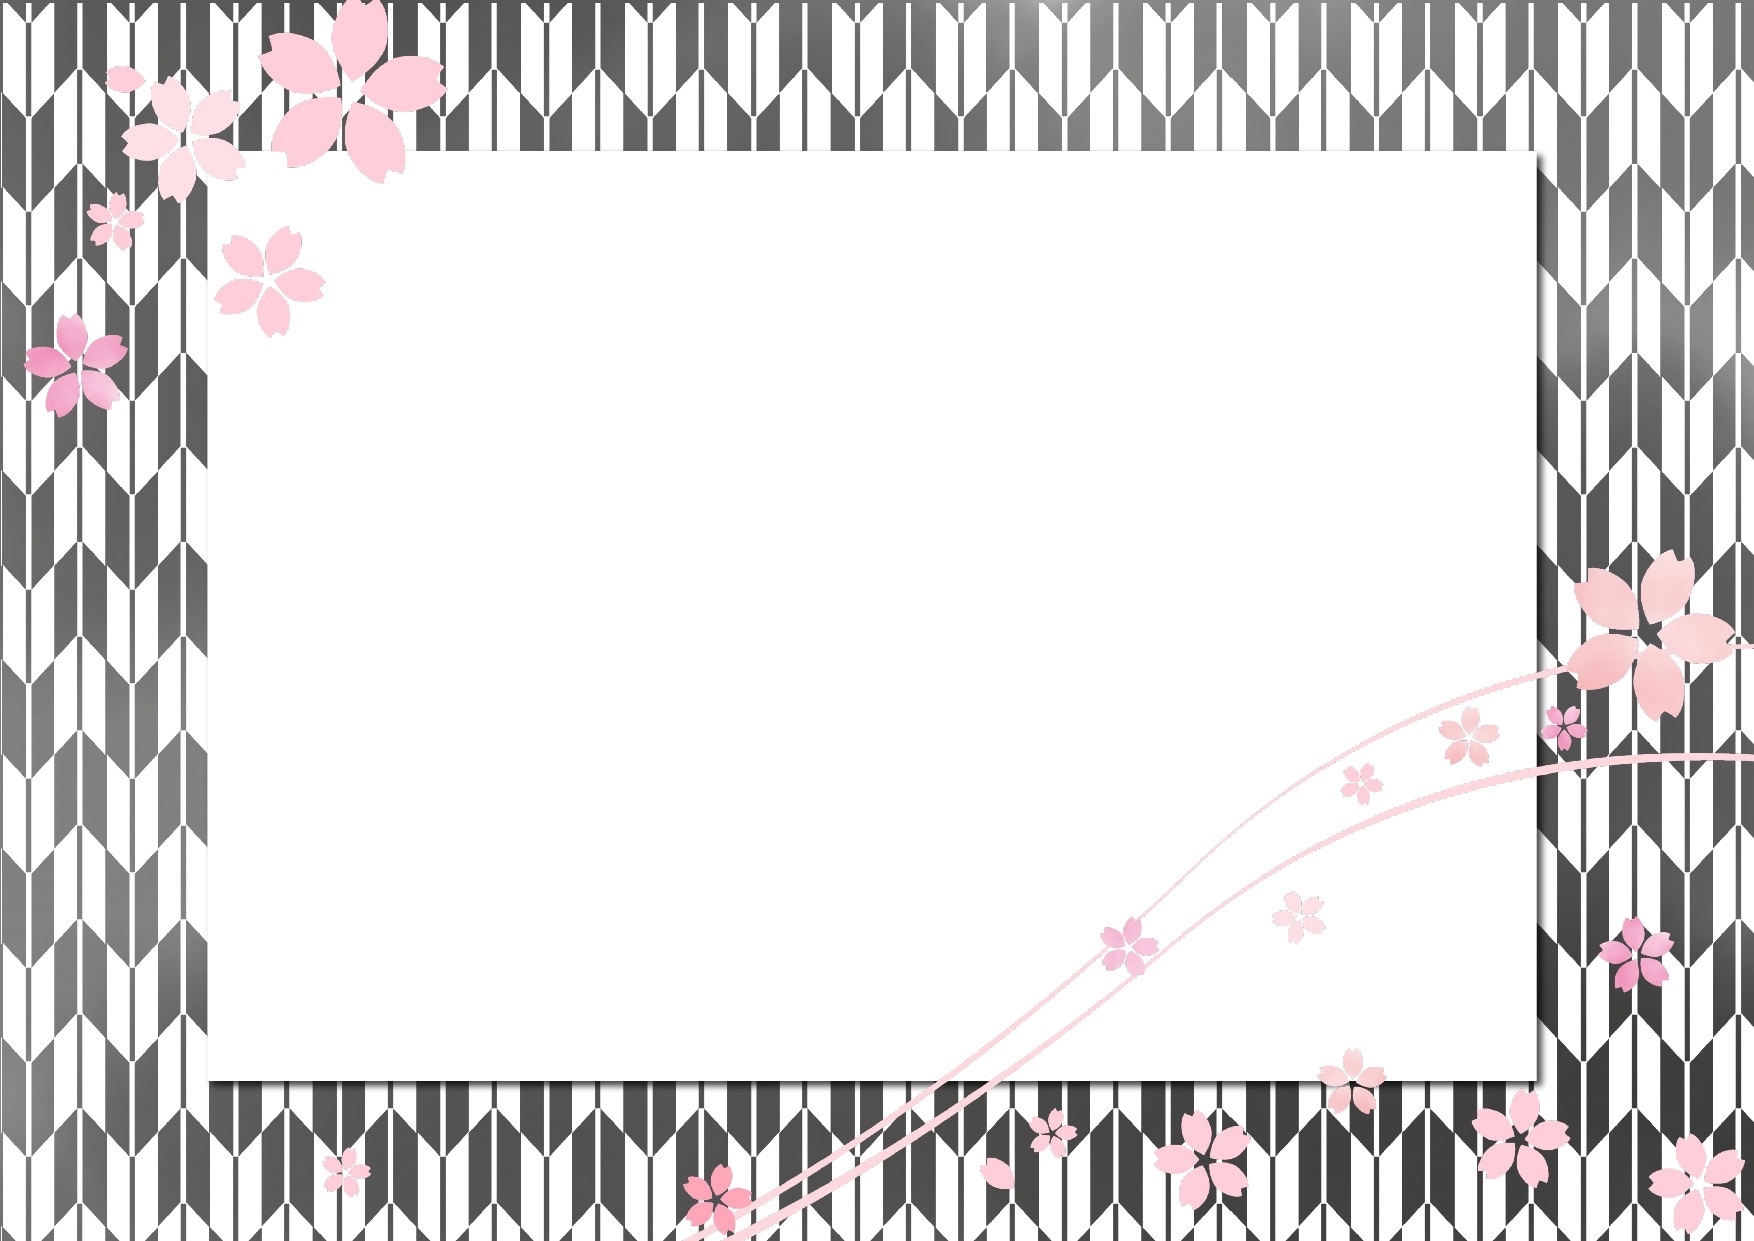 モノクロ 白黒 和柄と桜 さくら のフレーム 無料ダウンロード かわいい 雛形 テンプレート素材